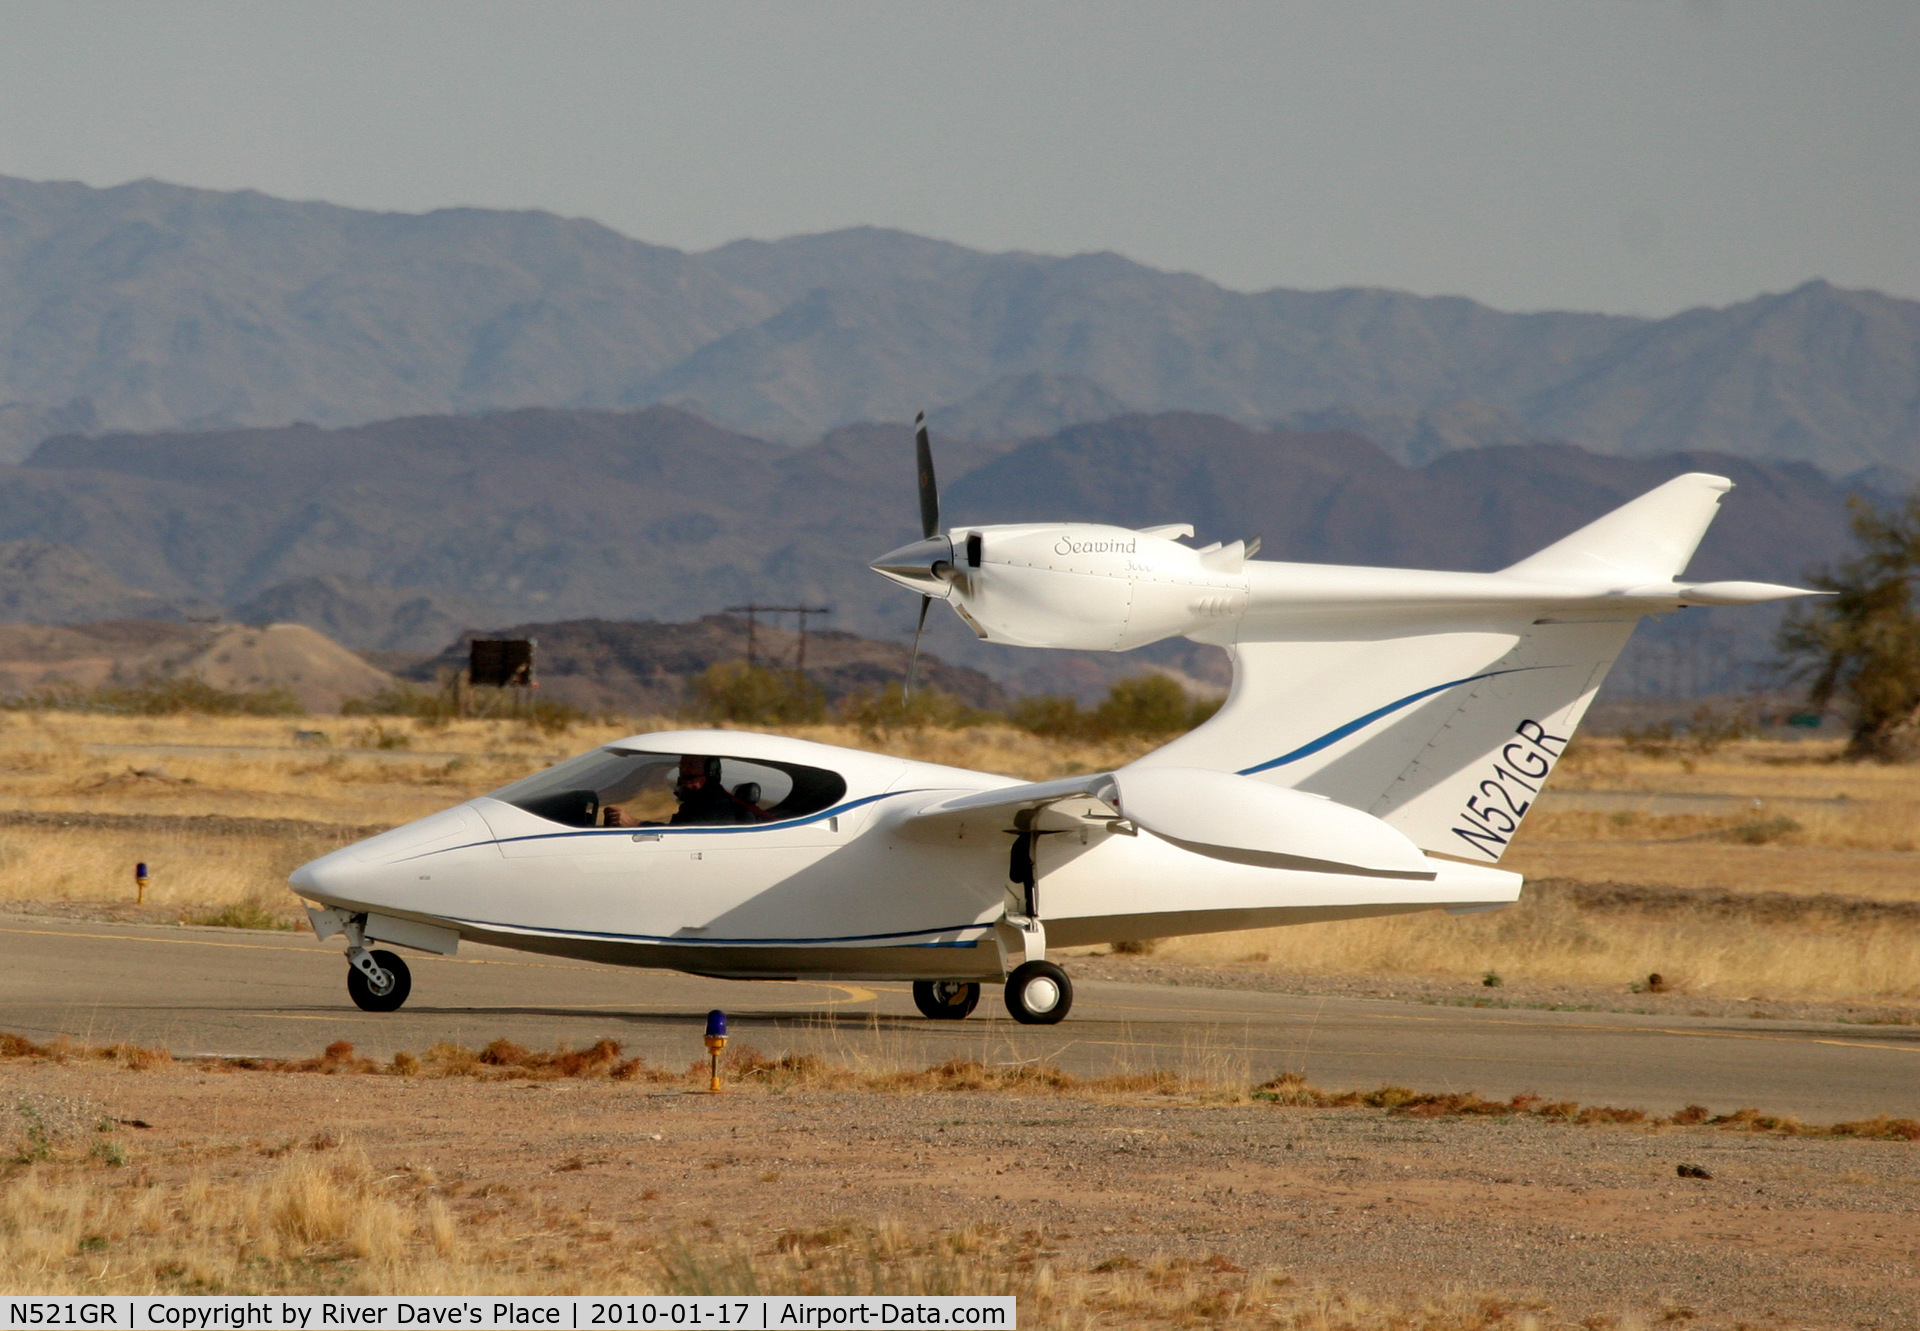 N521GR, 2000 Seawind 3000 C/N 23, Parker Arizona